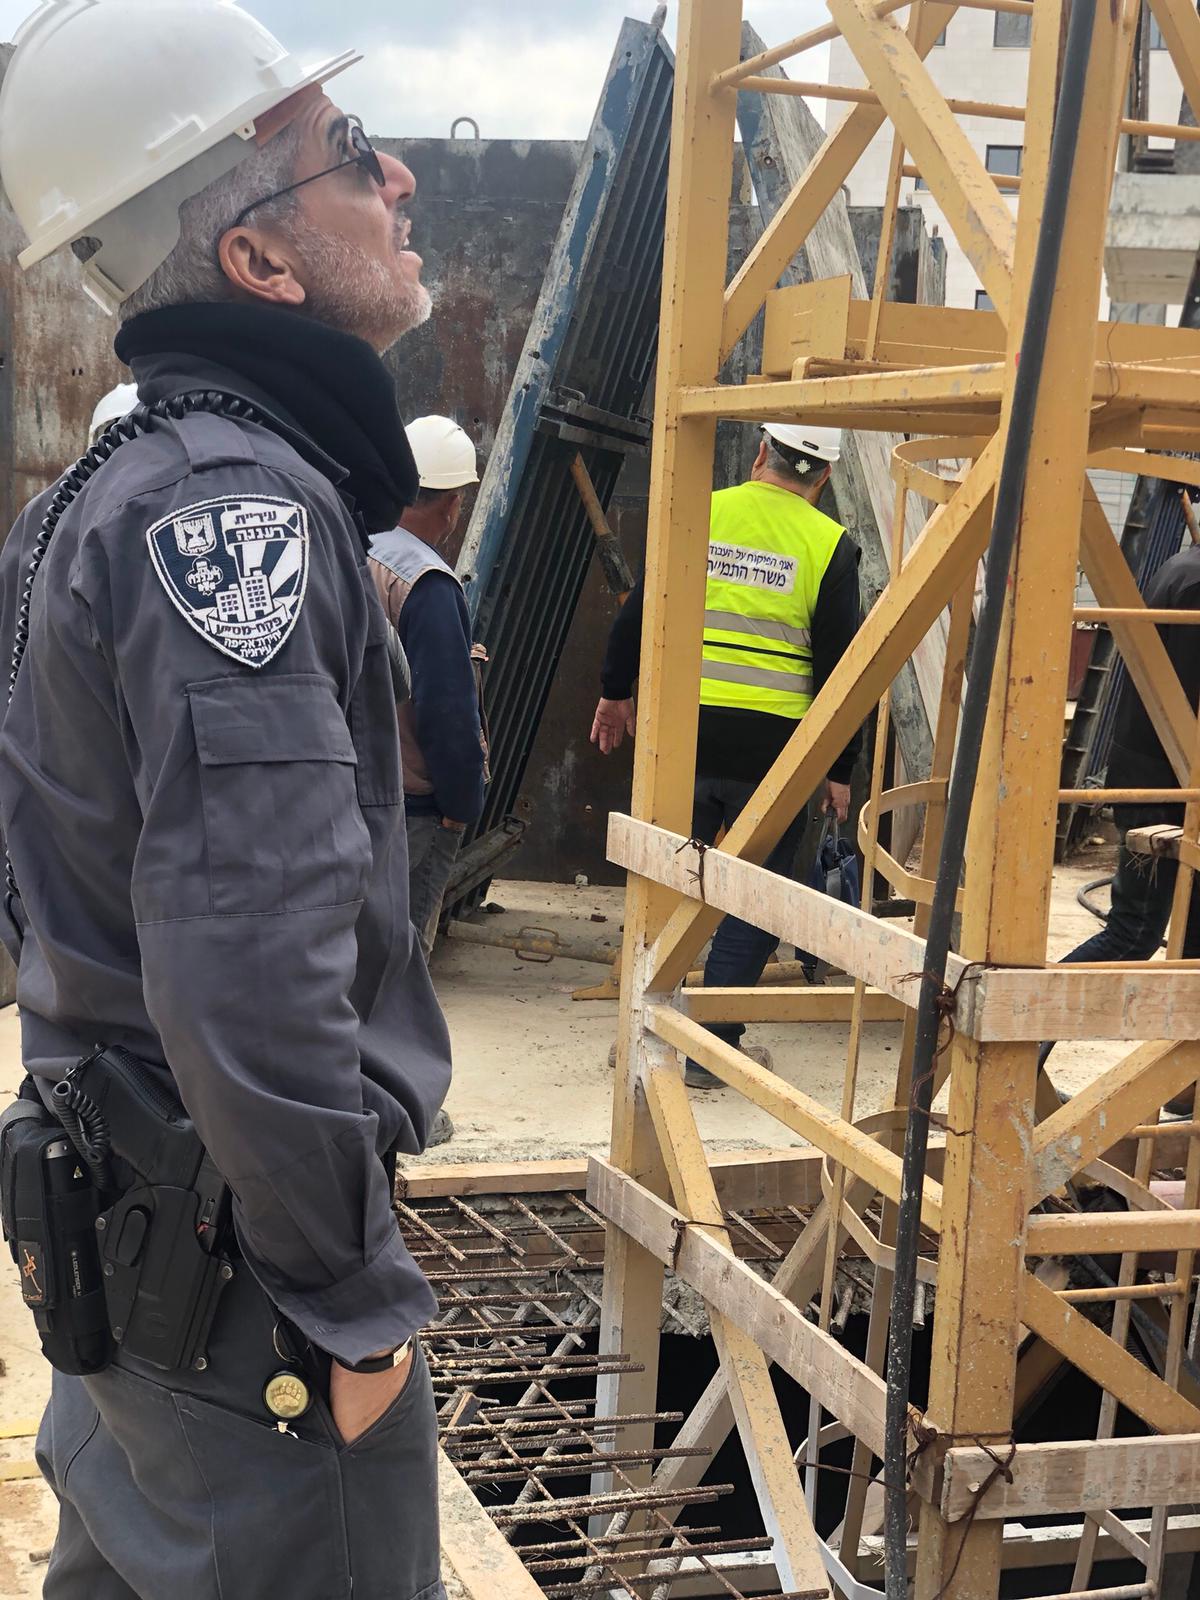 יחידת האכיפה של עיריית רעננה, בשיתוף משרד העבודה והרווחה, קיימה מבצע ביקורת בטיחות באתרי הבנייה בעיר  לבדיקת תקינותם ואיתור ליקויי בנייה